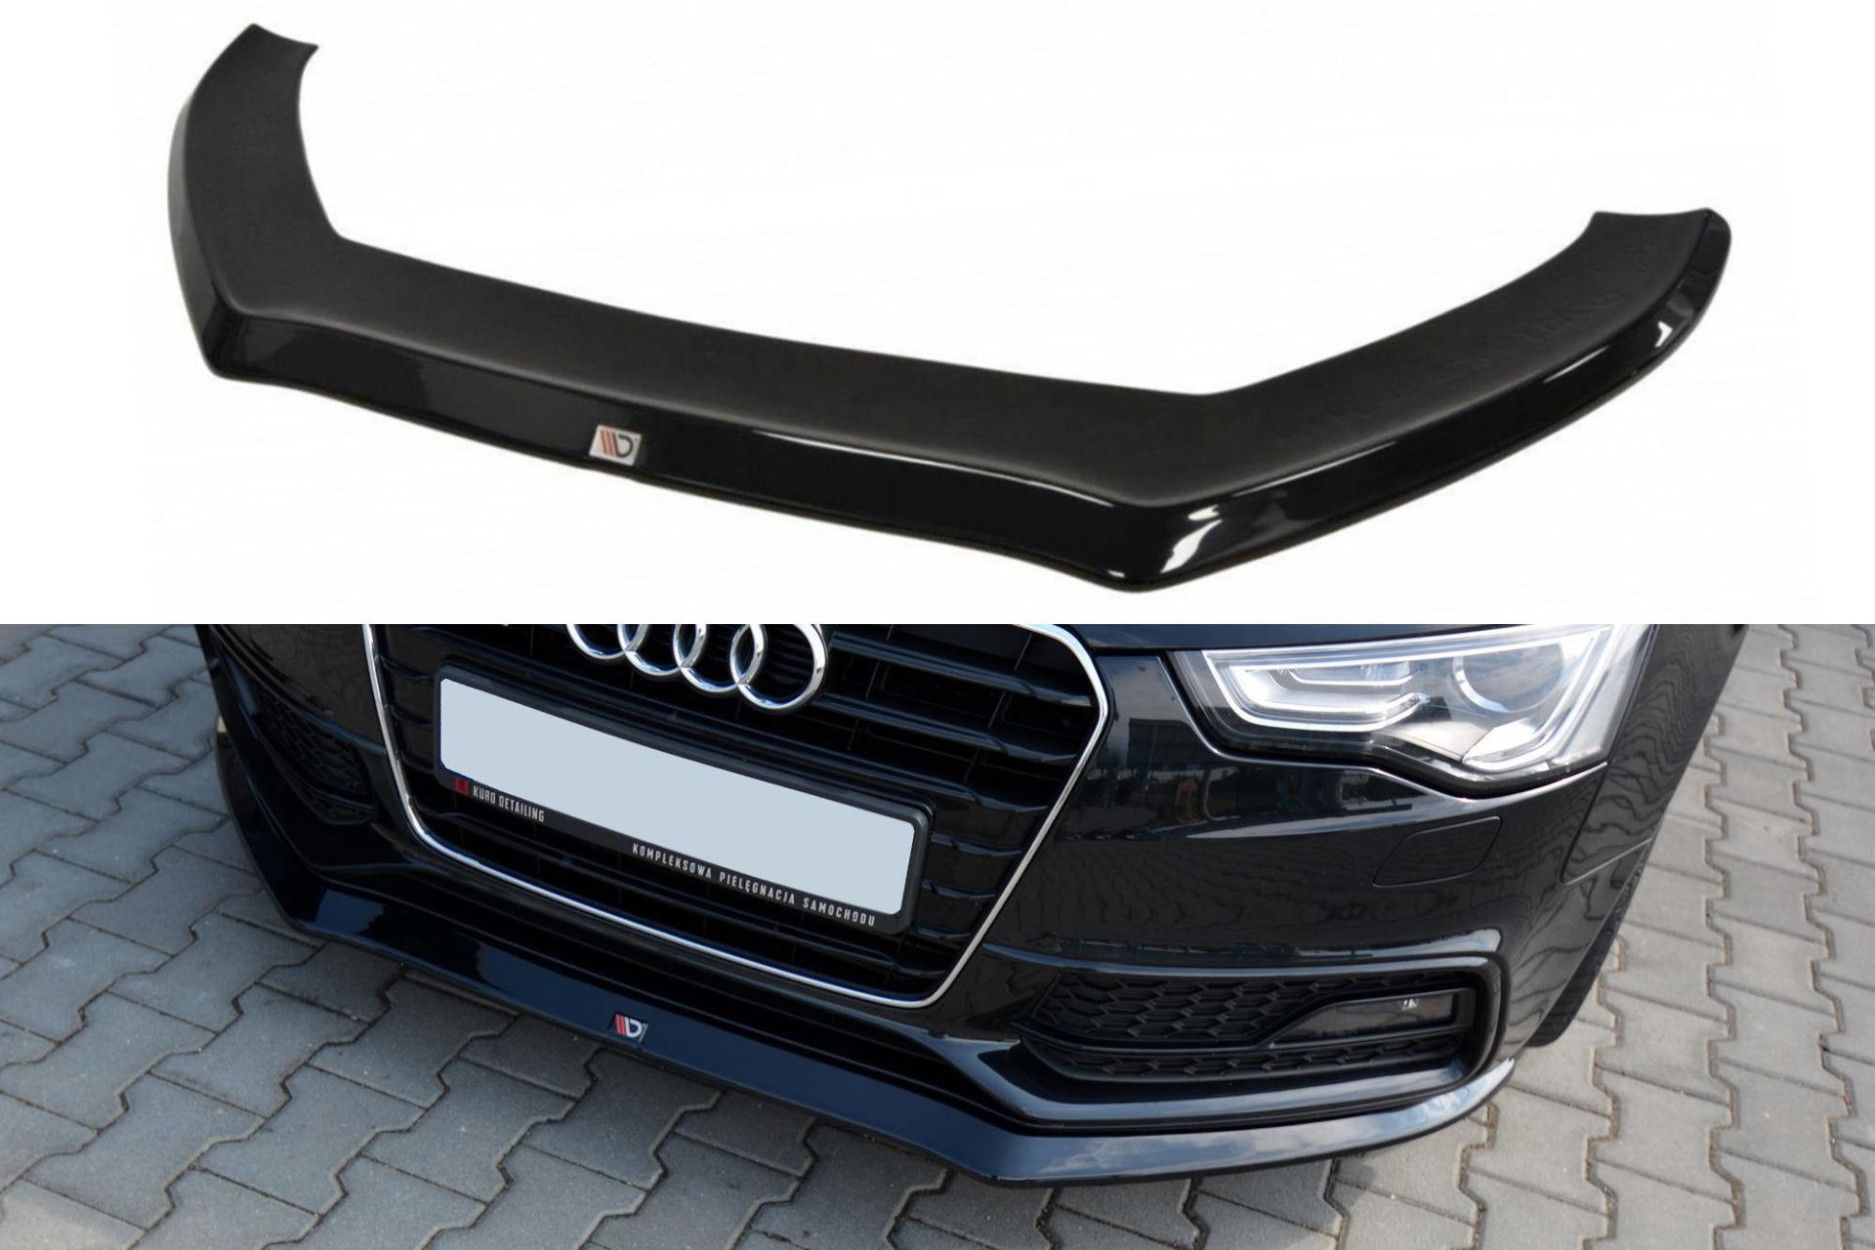 Maxton Design Frontlippe für Audi A5 8T S5|S-Line Facelift schwarz hochglanz